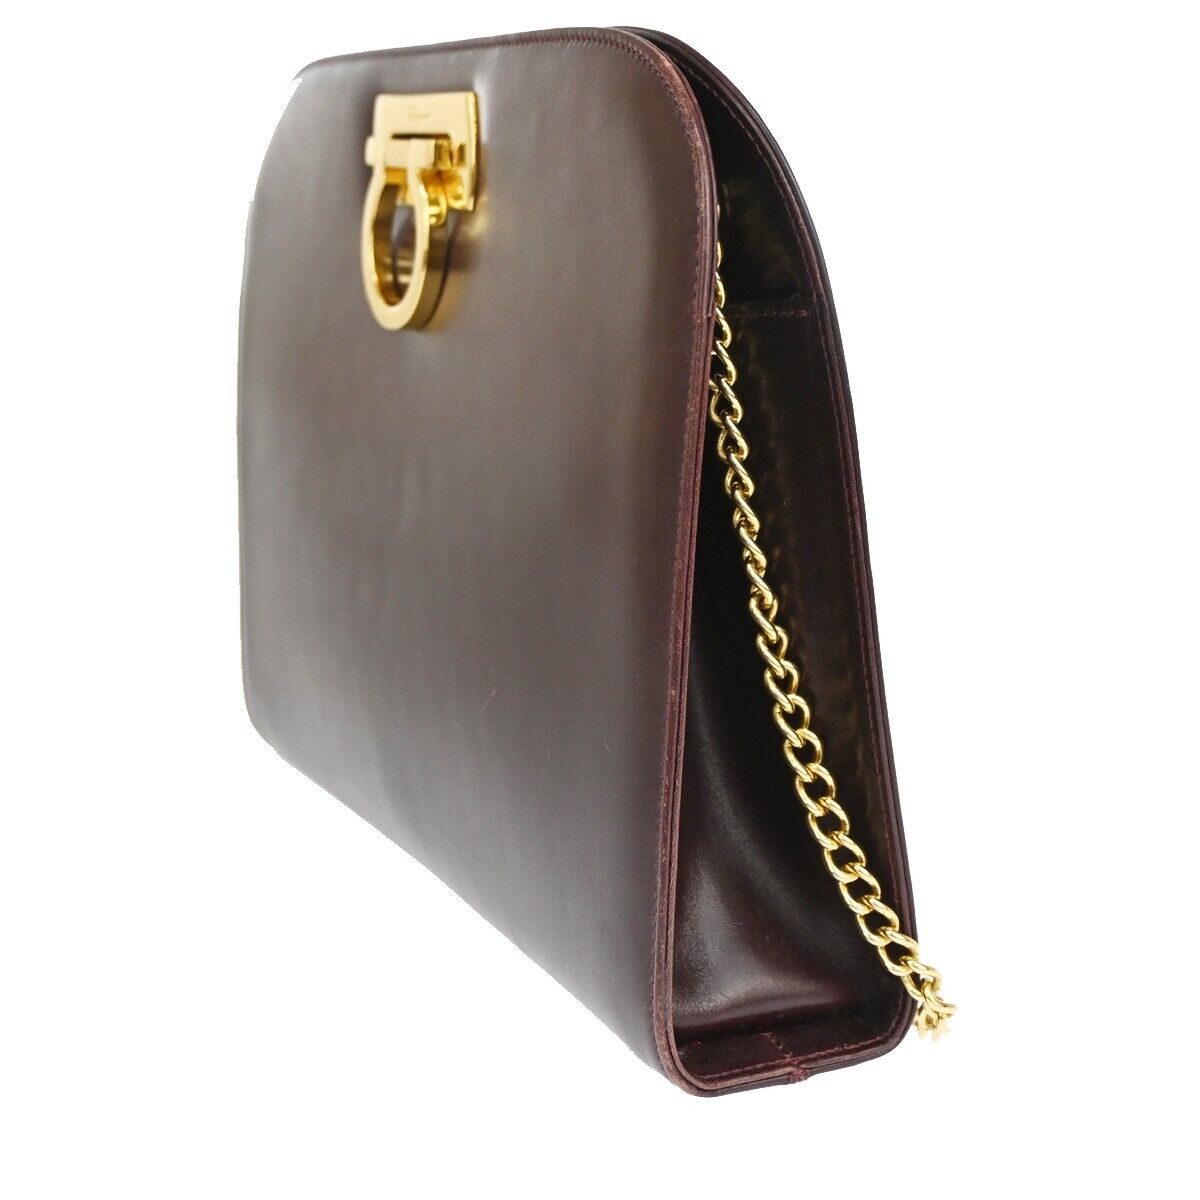 Burgundy Leather Shoulder Bag